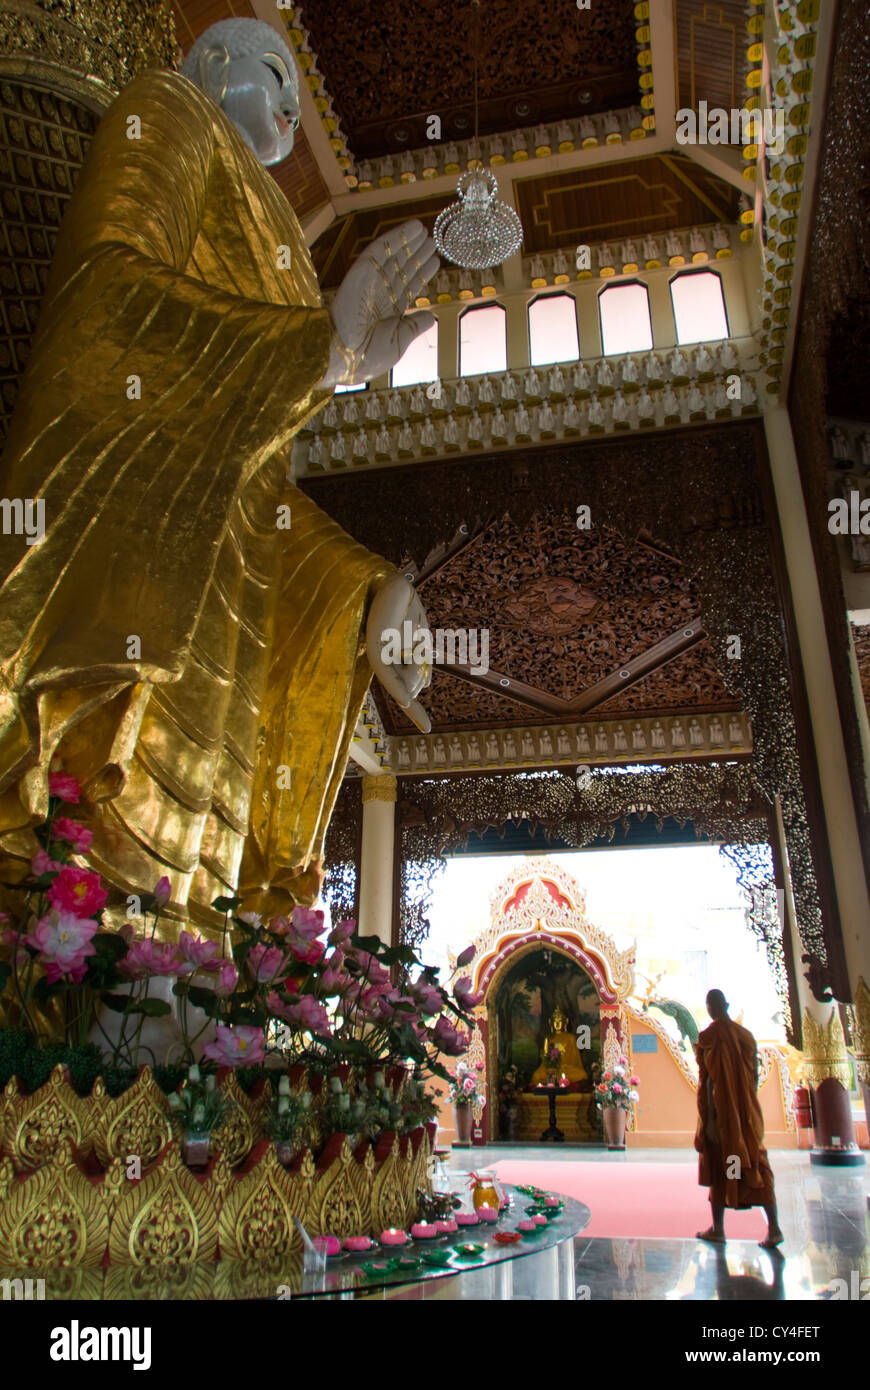 Un monaco passa attraverso una sala contenente una grande statua del Buddha. Dhammikarama Tempio buddista birmano, Penang, Malaysia. Foto Stock